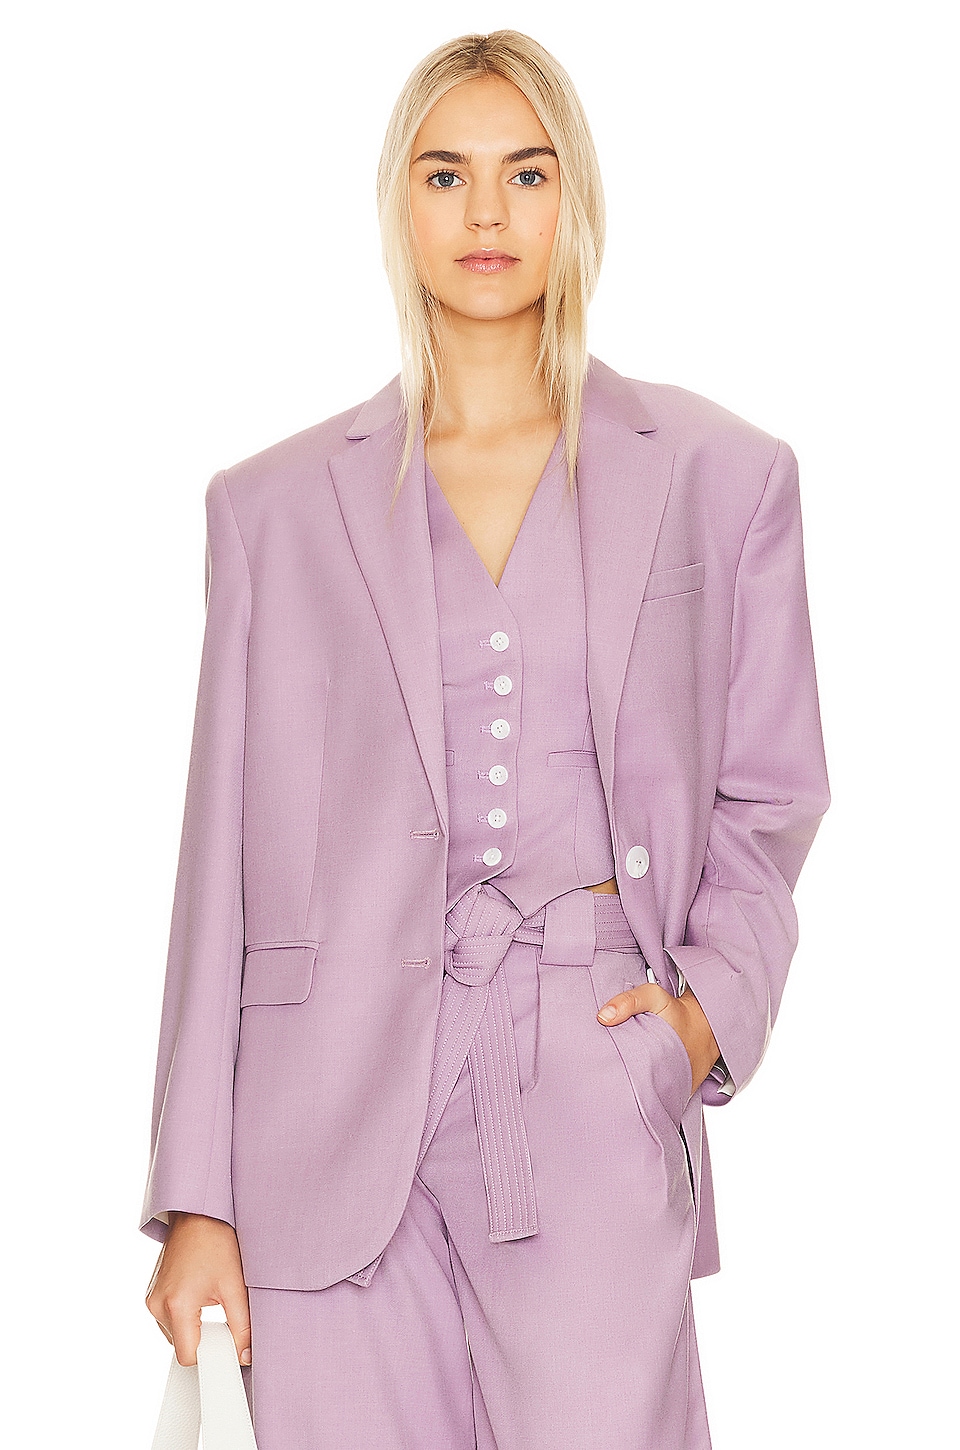 4pc Lilac Light Purple Vest & Tie Suit Set Baby Boy Toddler Kid Uniform S-7  - Walmart.com